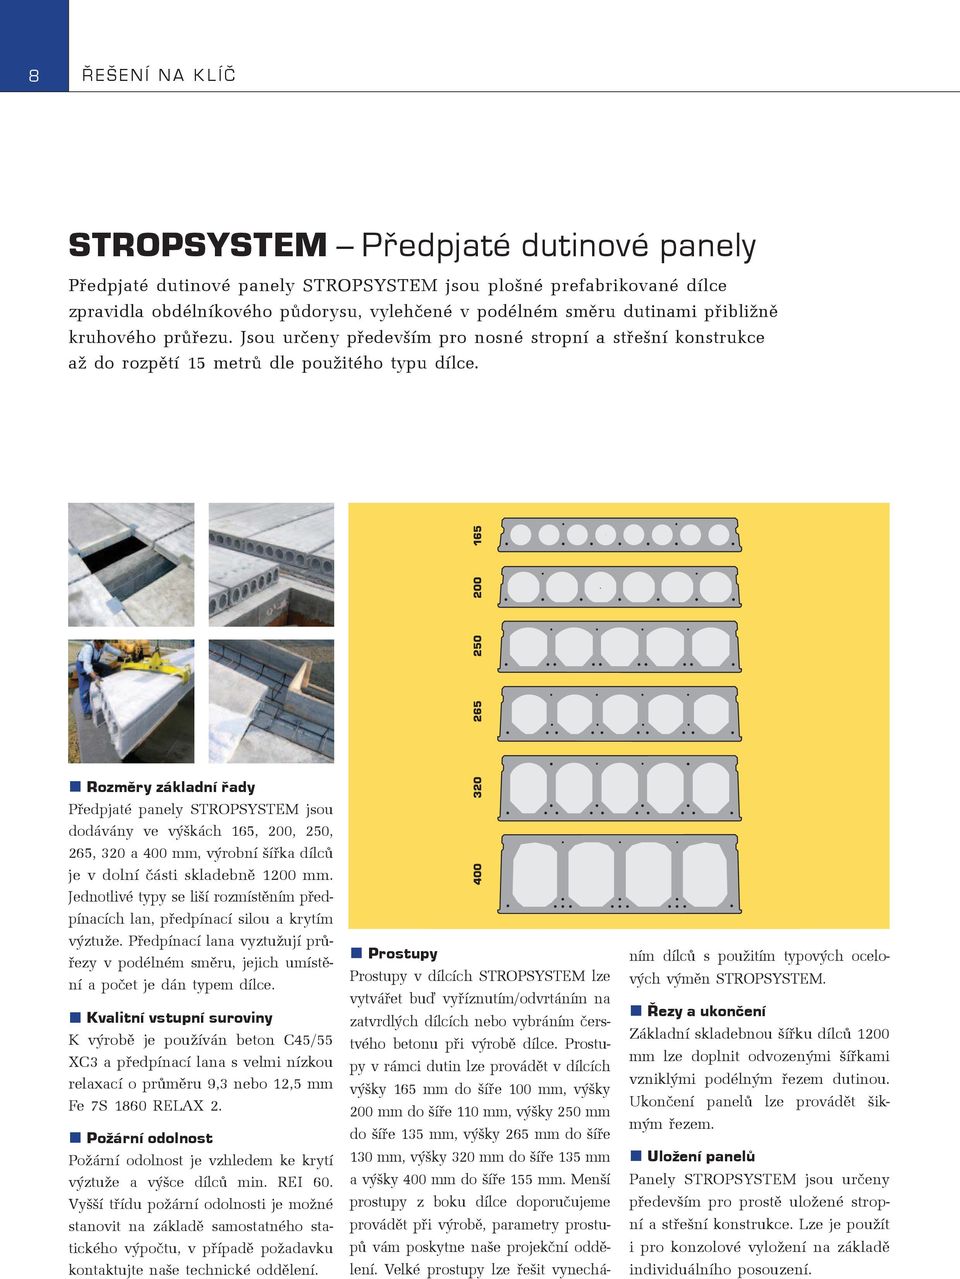 Rozmìry základní øady Pøedpjaté panely STROPSYSTEM jsou dodávány ve výškách 165, 200, 250, 265, 320 a 400 mm, výrobní šíøka dílcù je v dolní èásti skladebnì 1200 mm.